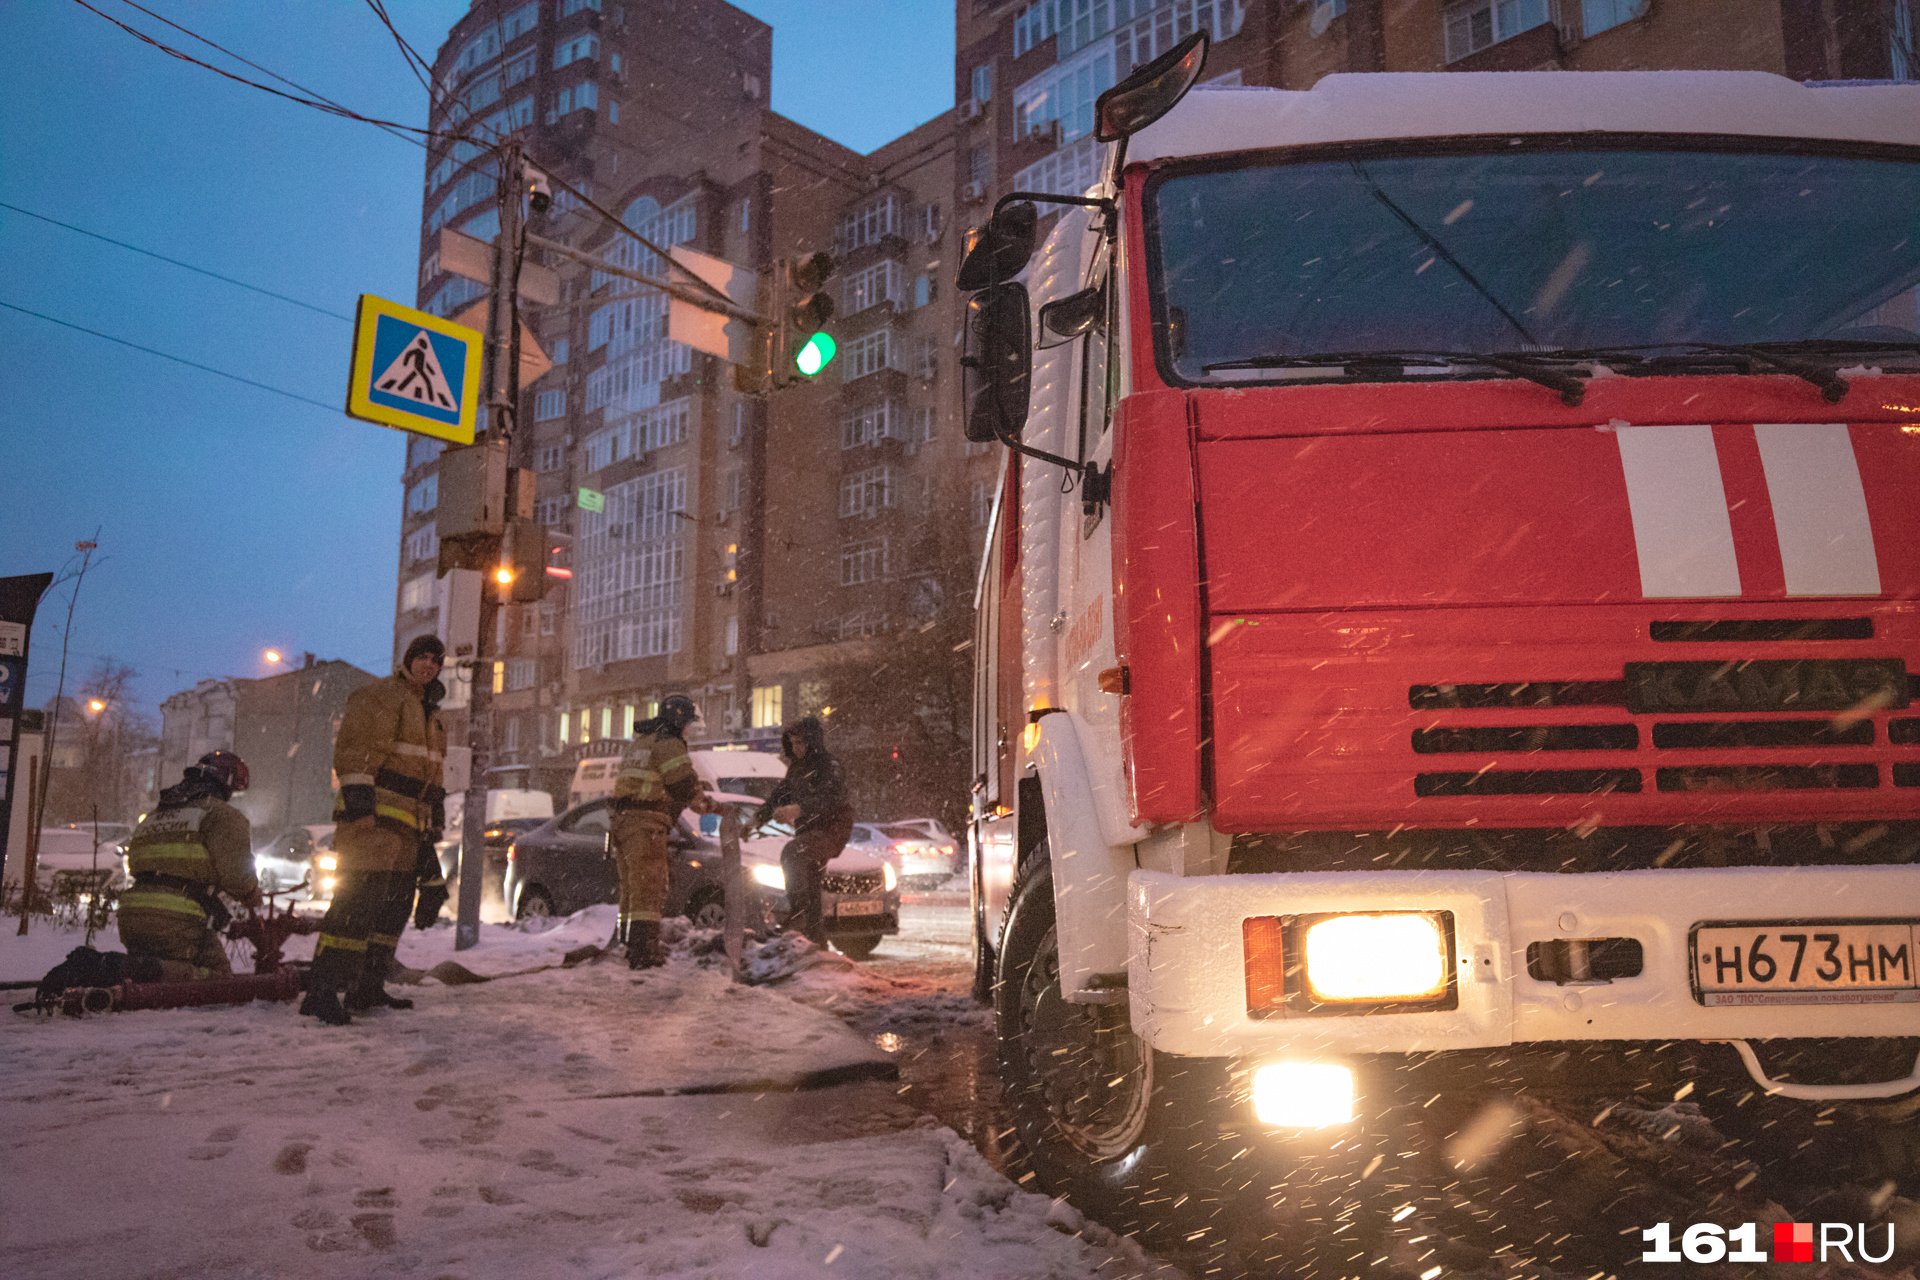 Утром на Рождество в Новокузнецке сгорел автобус. Узнали, что случилось